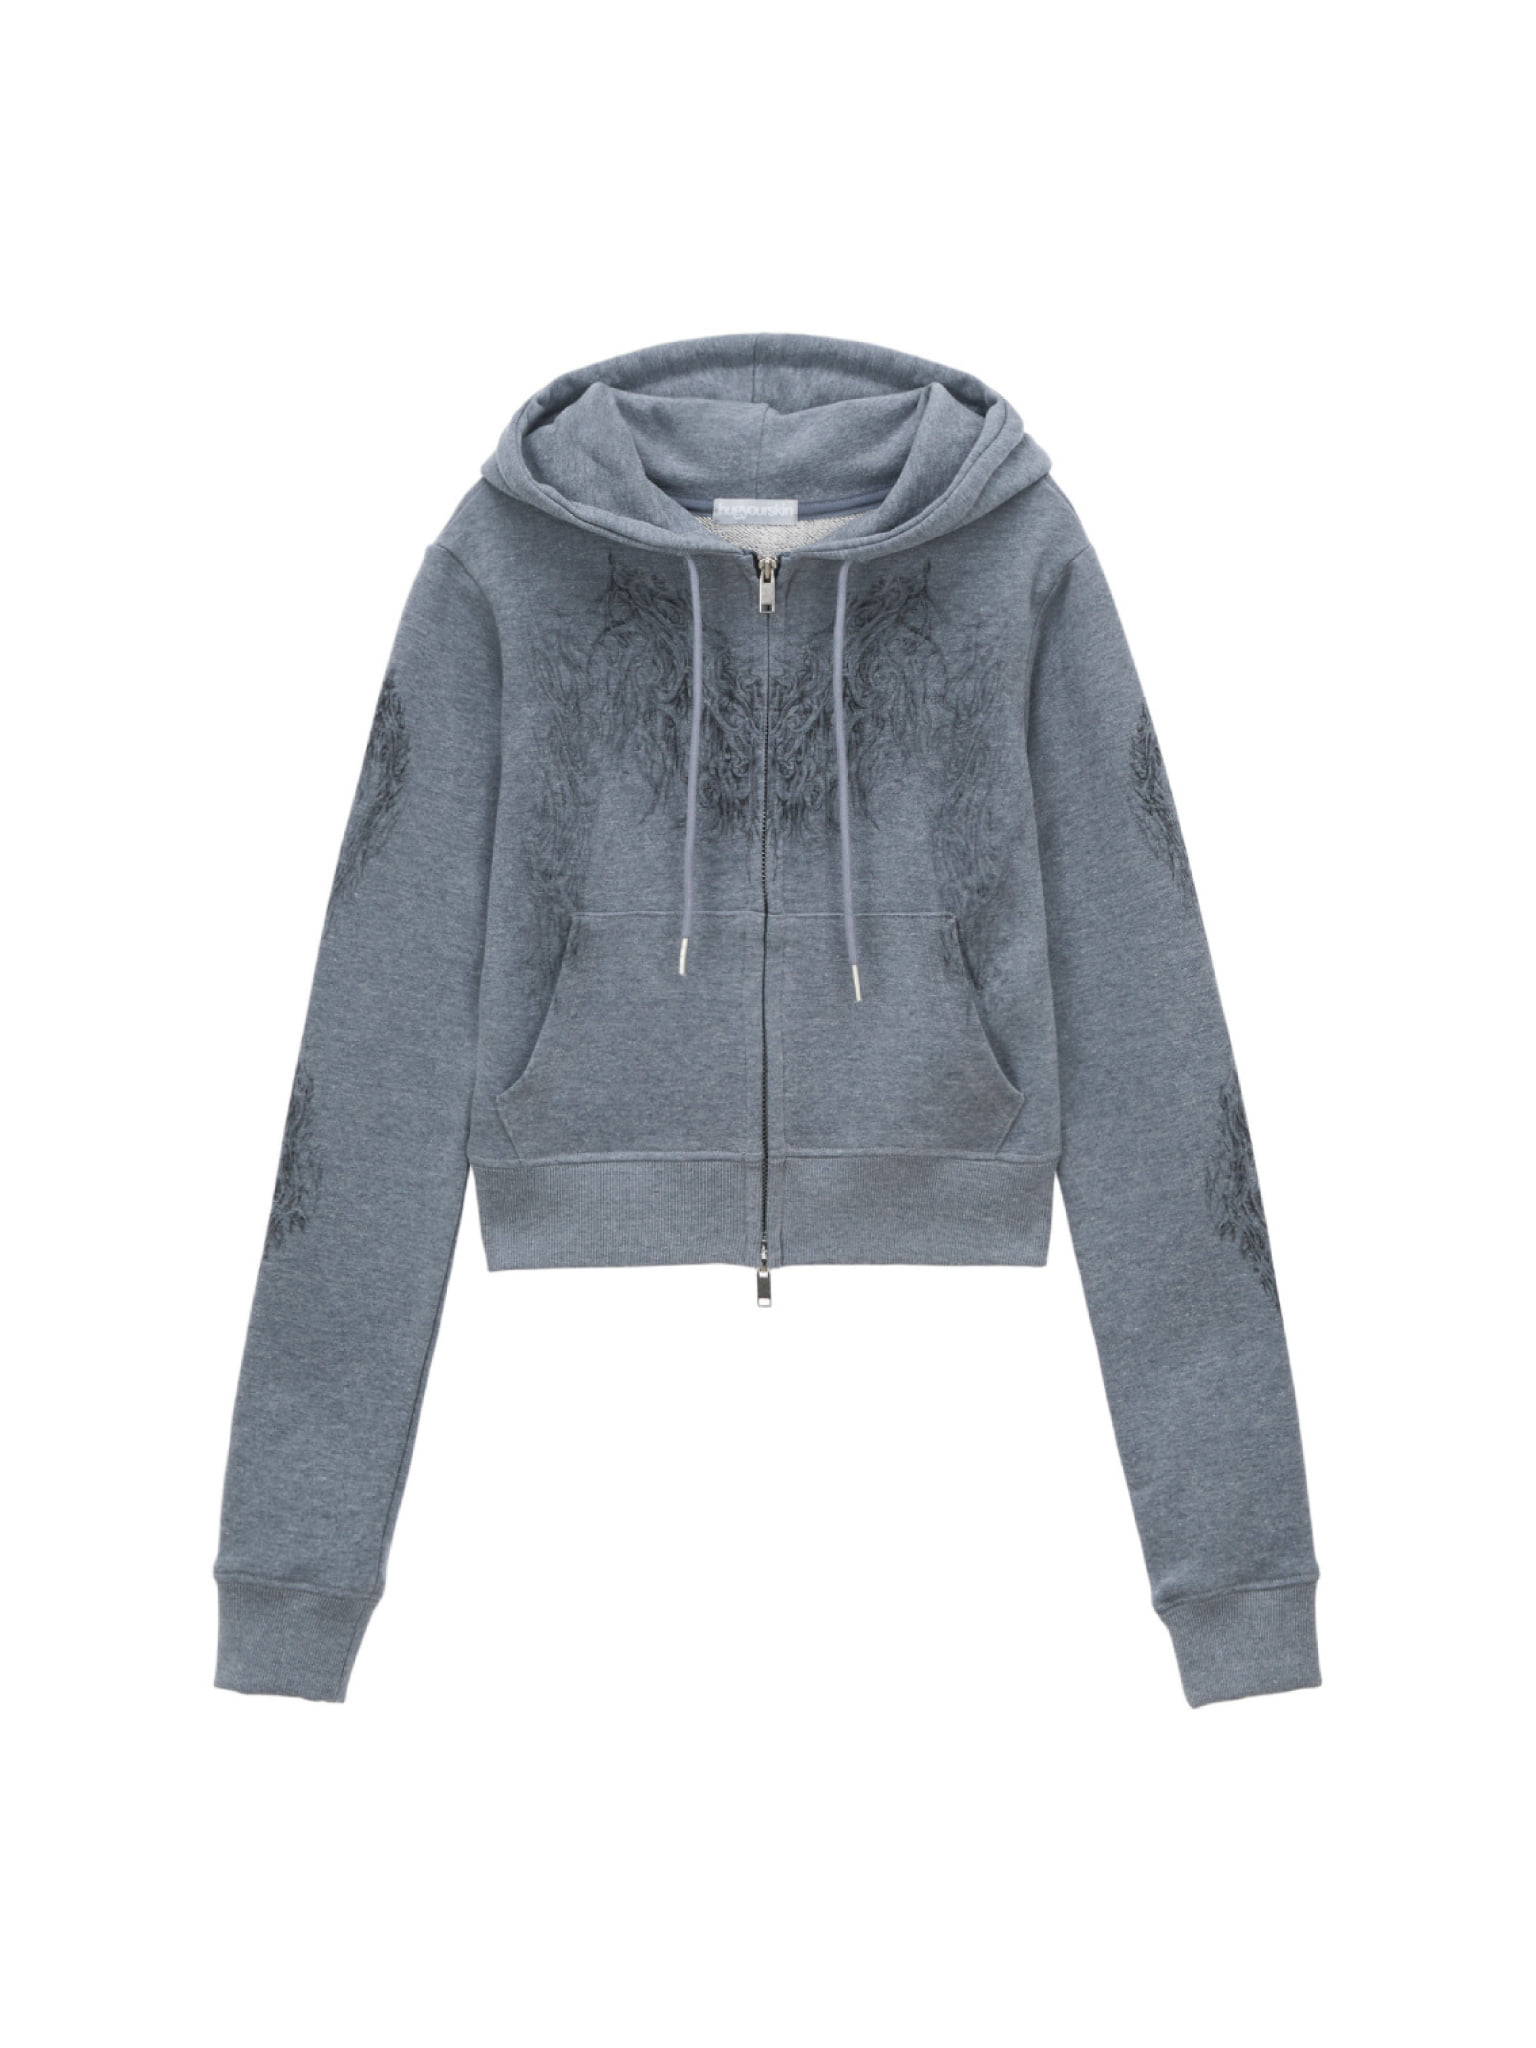 Skully cropped hoodie zip-up (Indigo)